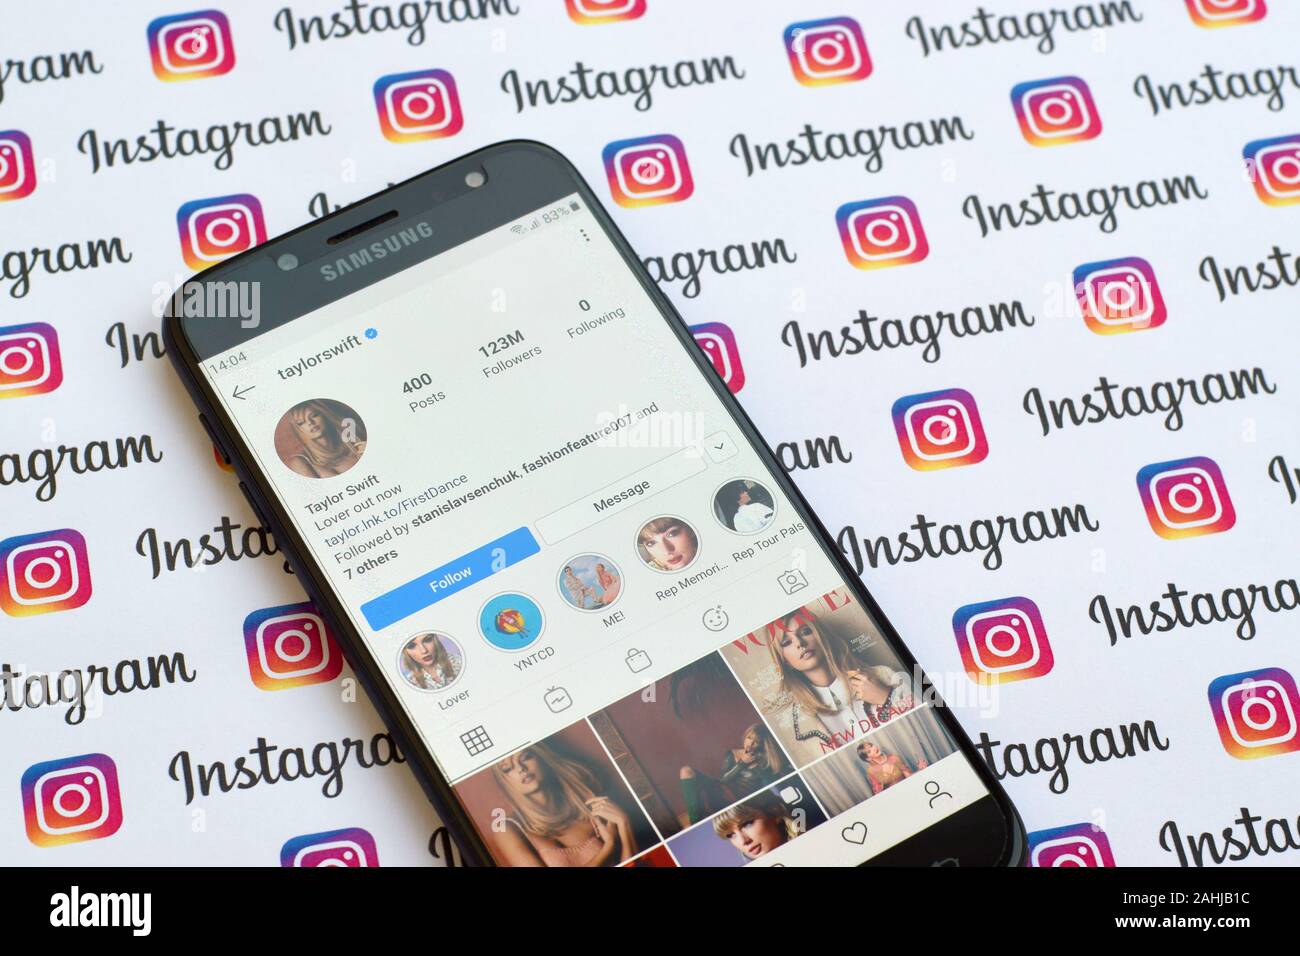 NY, USA - Dezember 4, 2019: Taylor Swift offizielle instagram Konto der Bildschirm des Smartphones auf dem Papier instagram Banner. Stockfoto